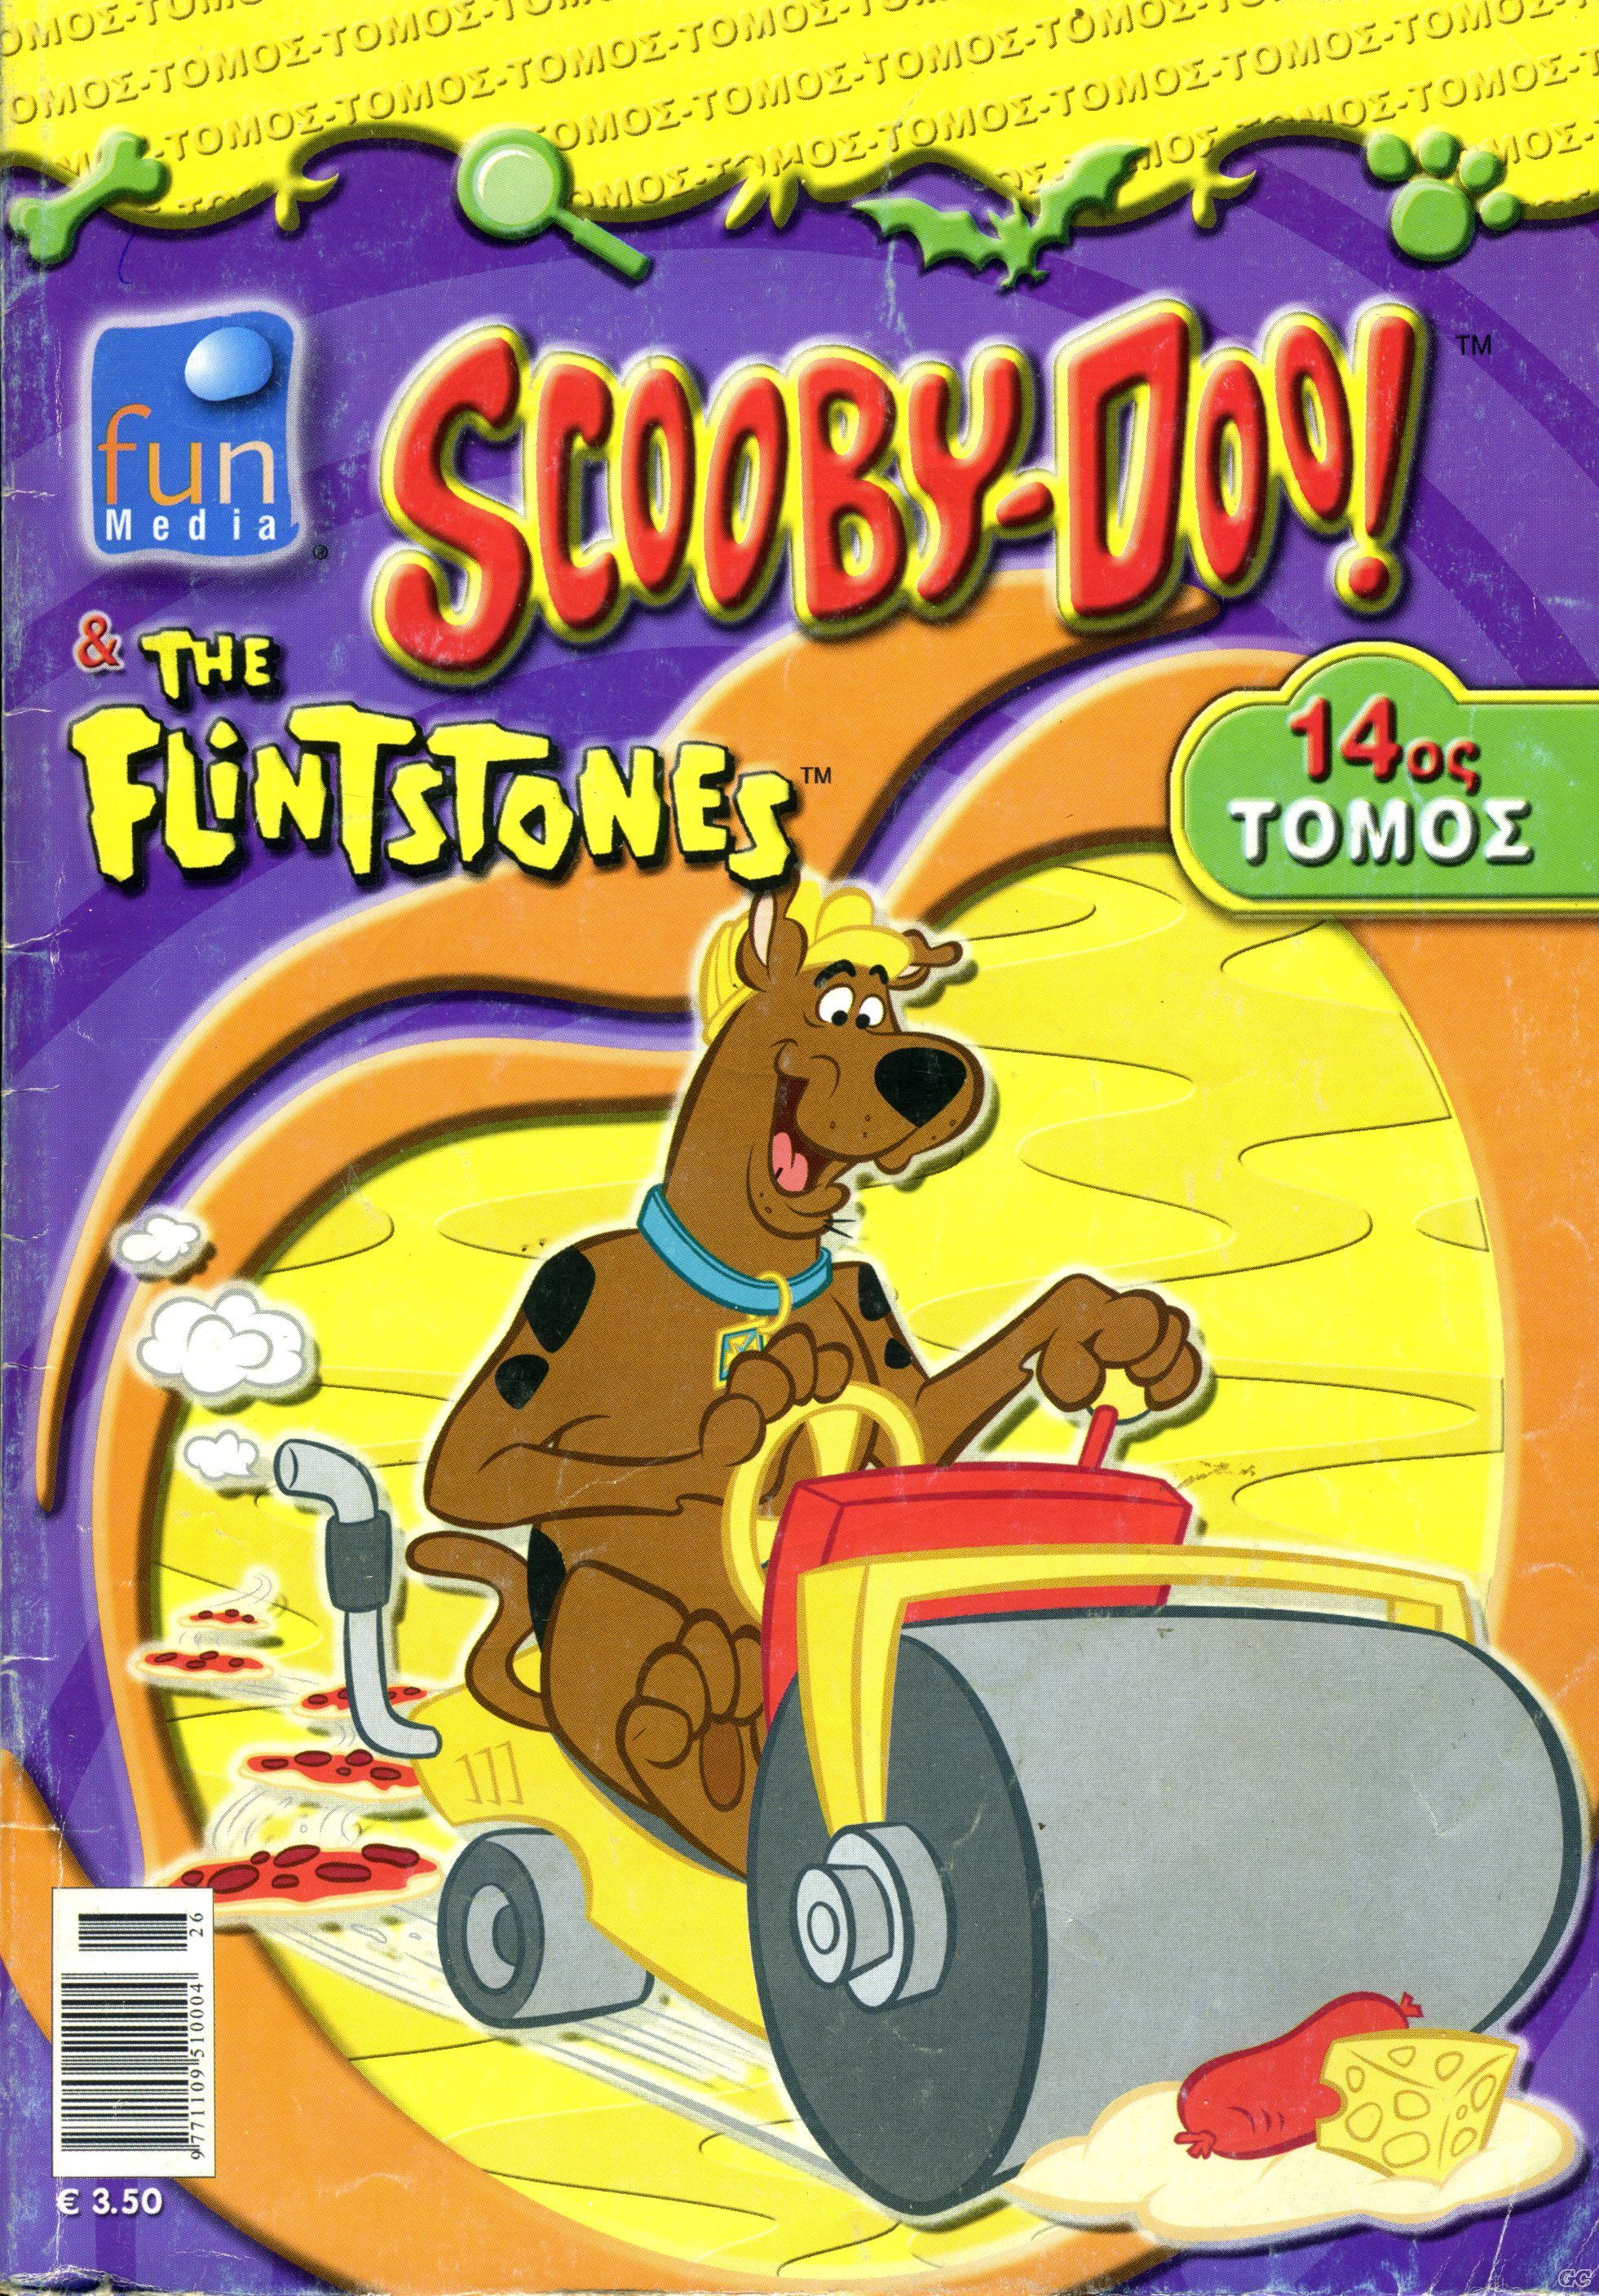 ScoobydooTheFlintstones_0014.jpg